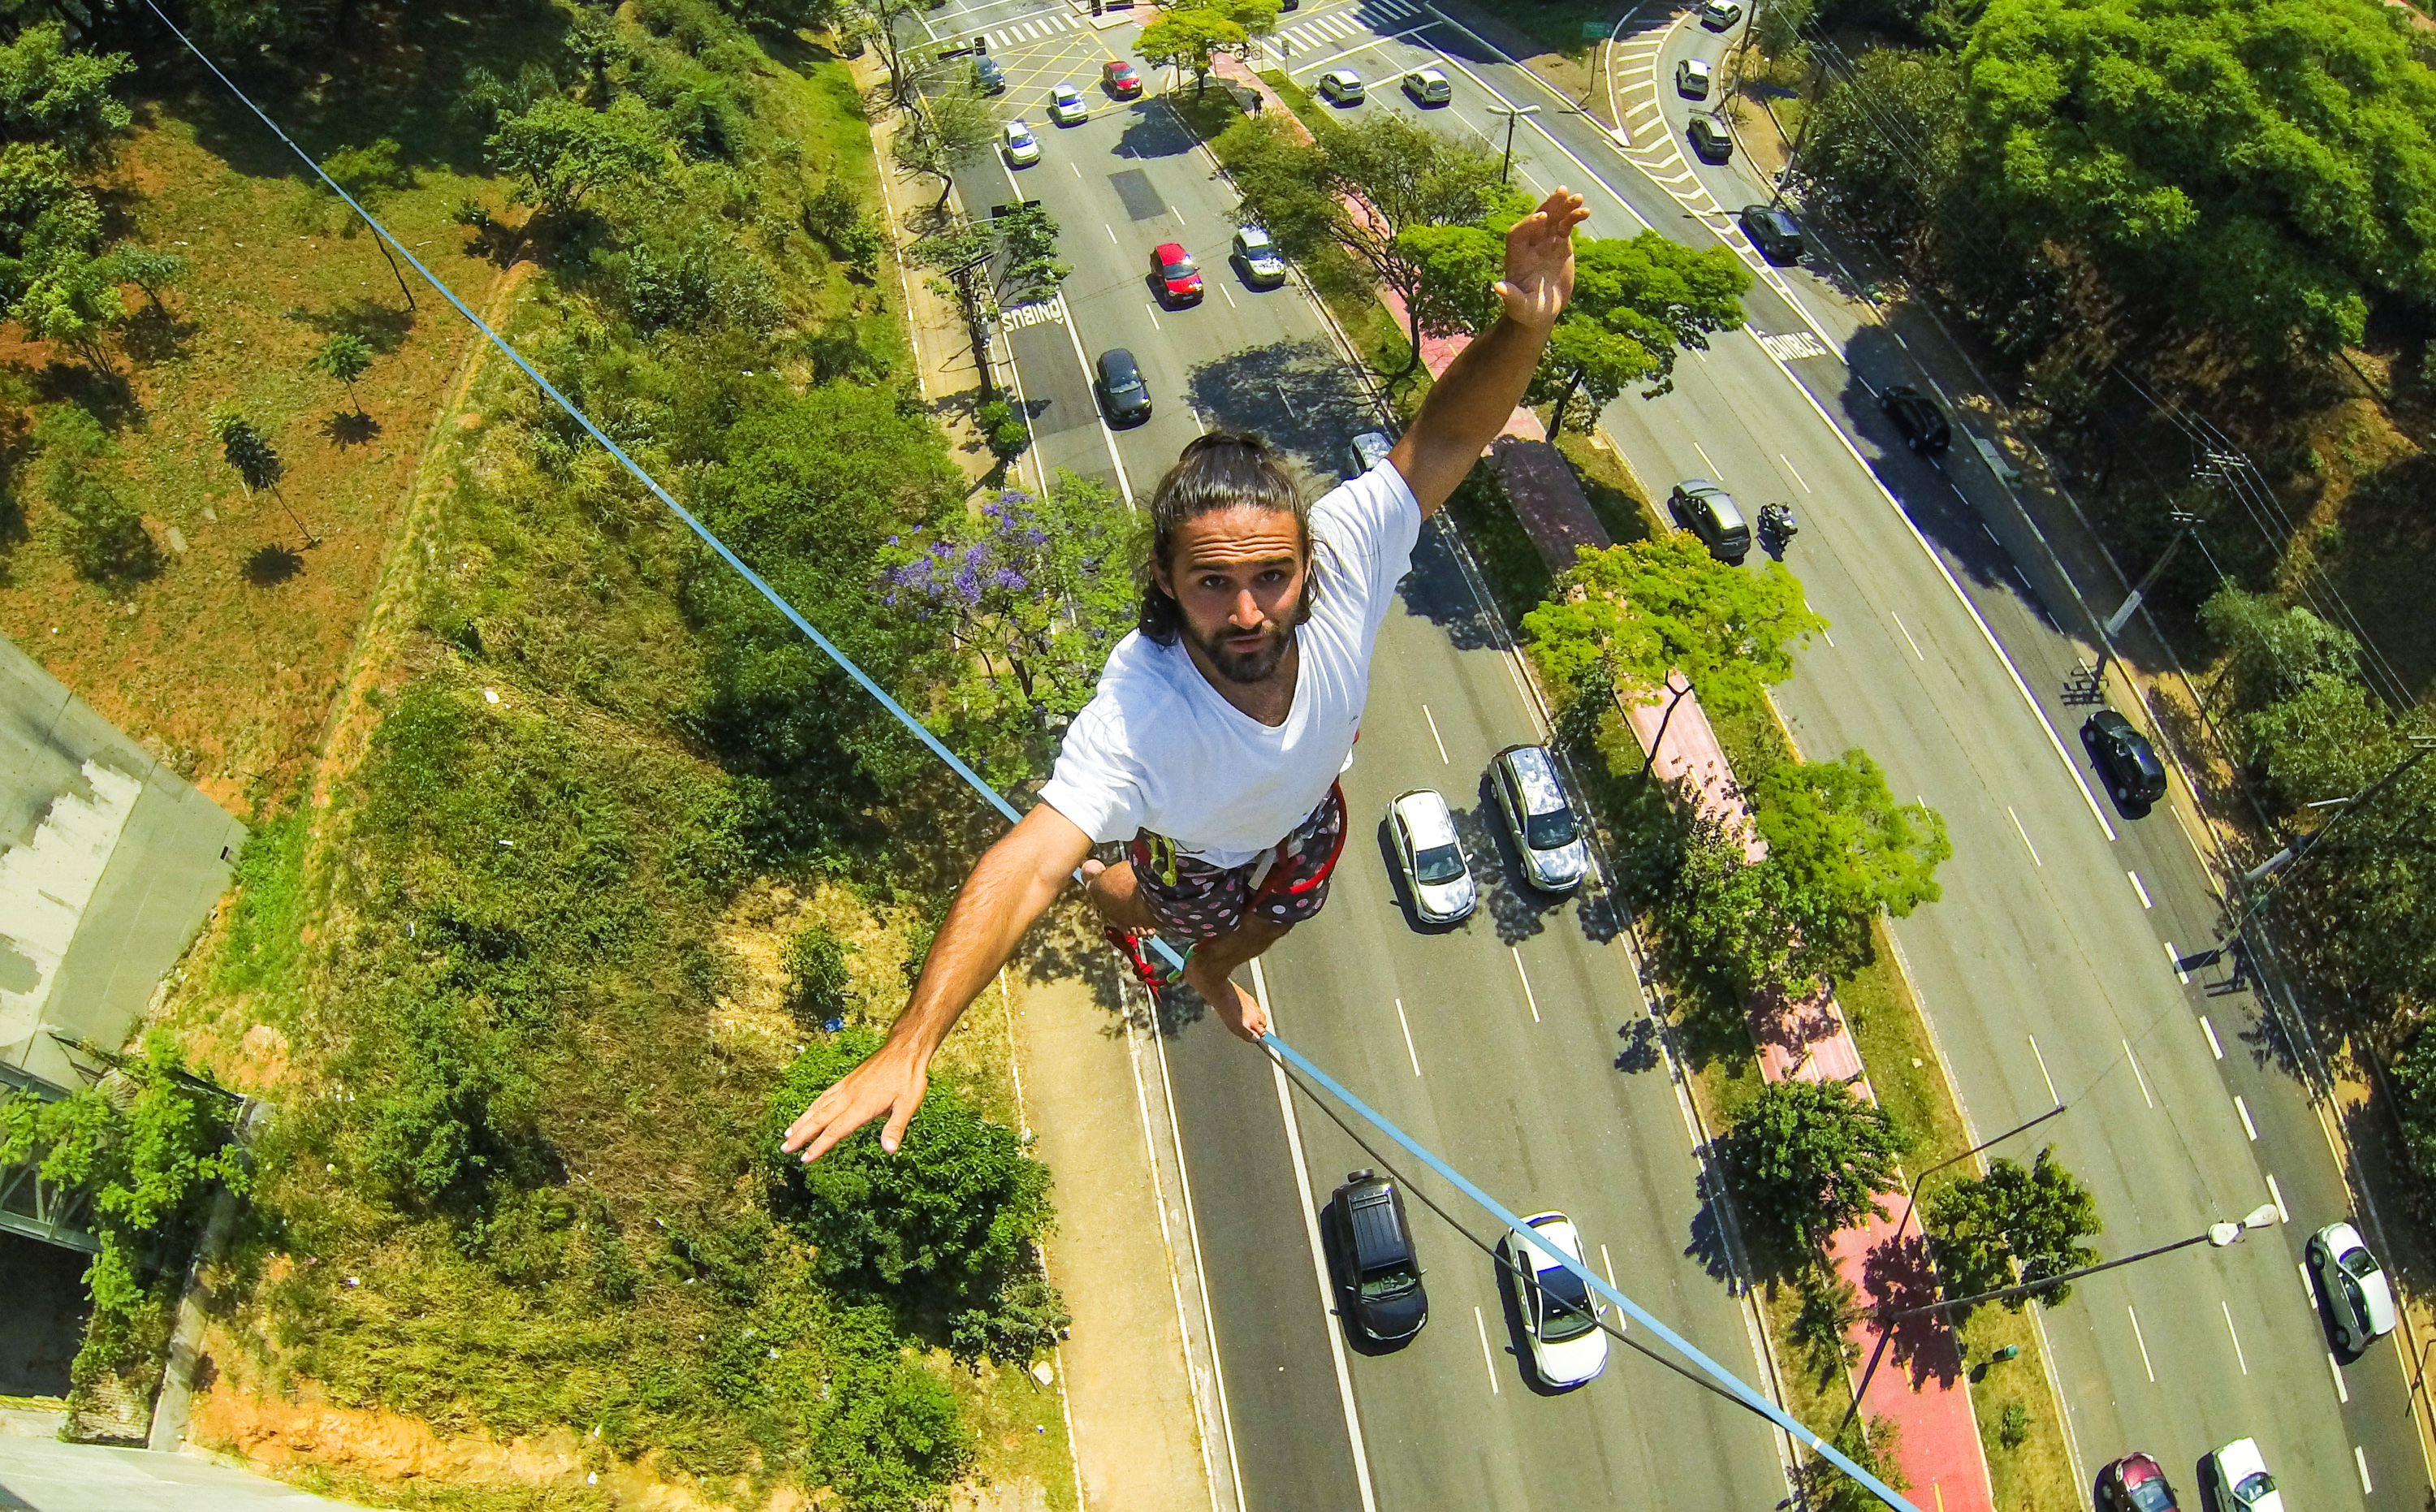 Guilherme Coary, estudante de educação física, faz o slackline highline (equilíbrio em fita) sobre a avenida Sumaré, em São Paulo, a uma altura de 30 m acima do solo (20/10/2015).